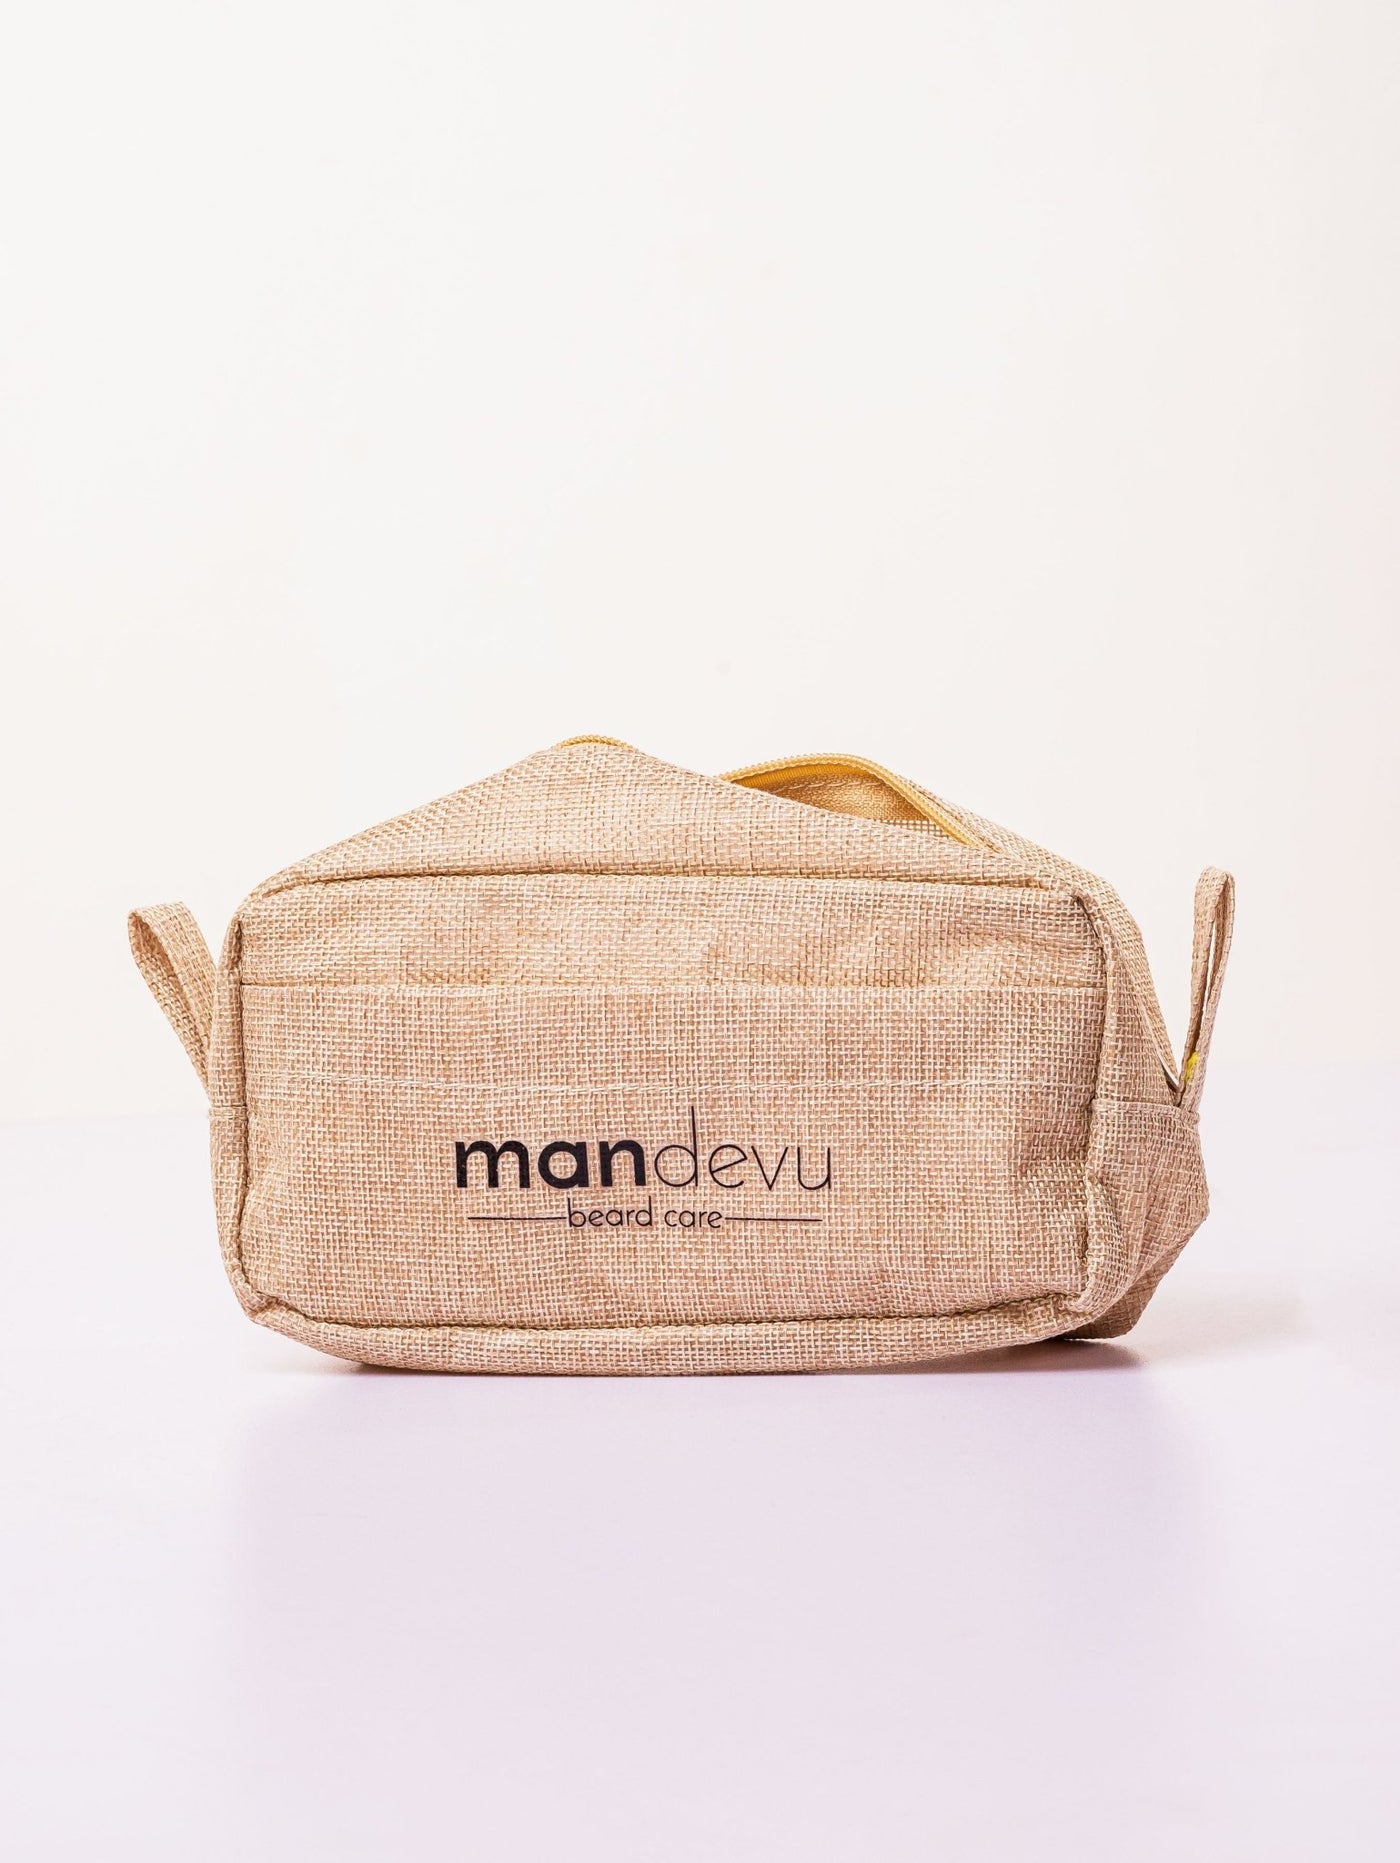 Mandevu Wash Bag - Shop Zetu Kenya